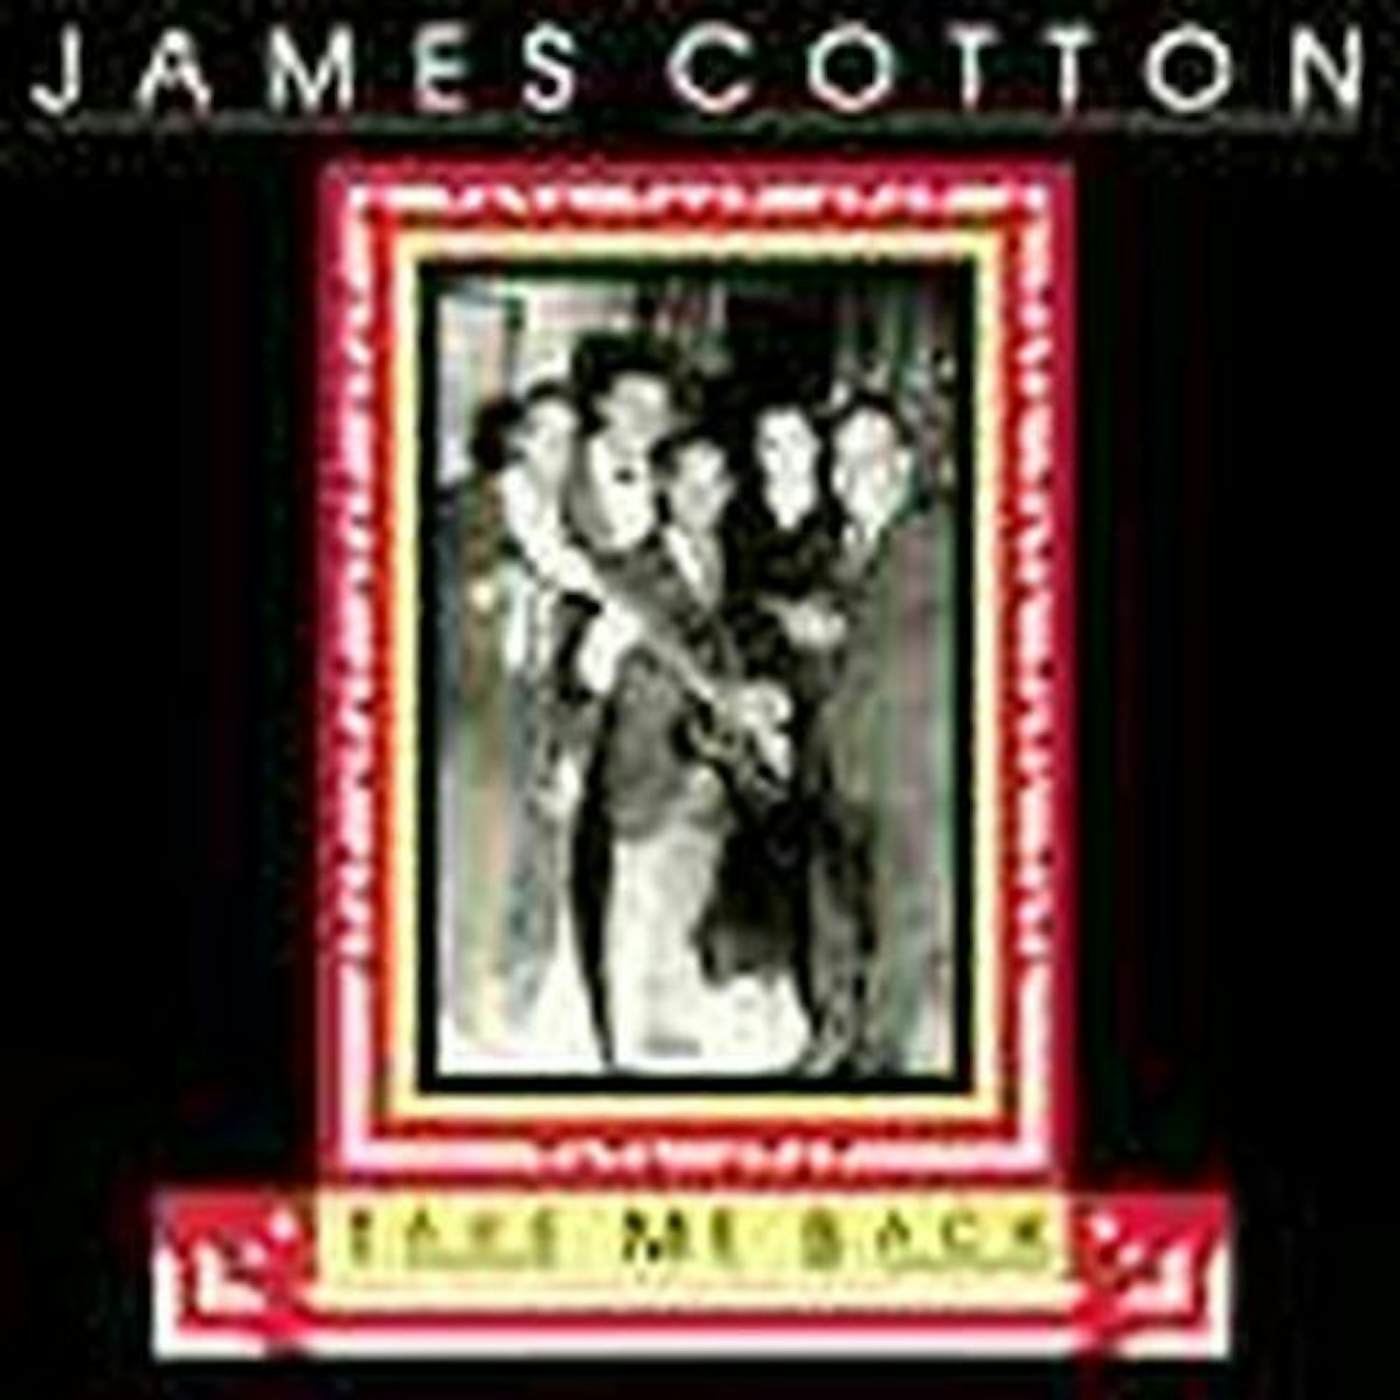 James Cotton TAKE ME BACK CD